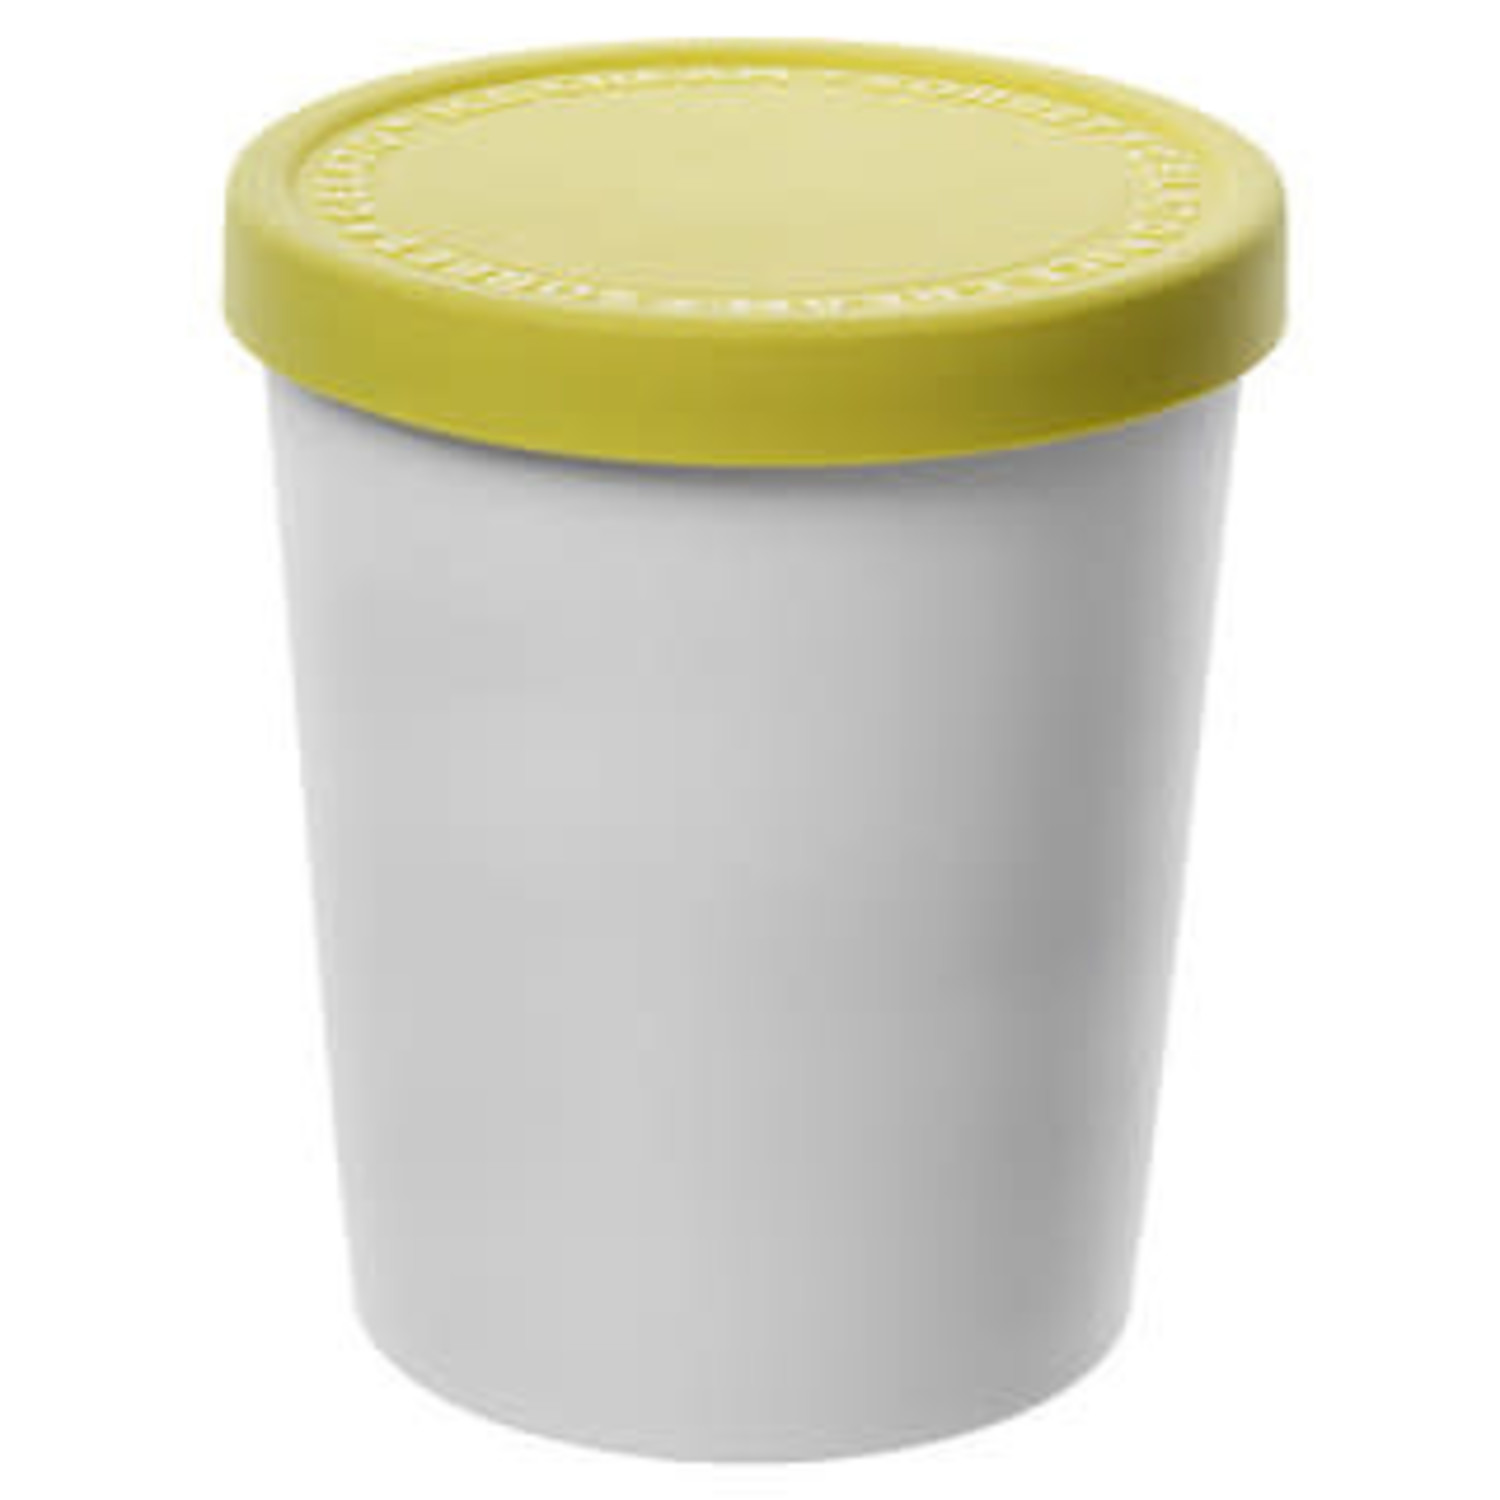 Lemon Ice Cream Tub - Whisk